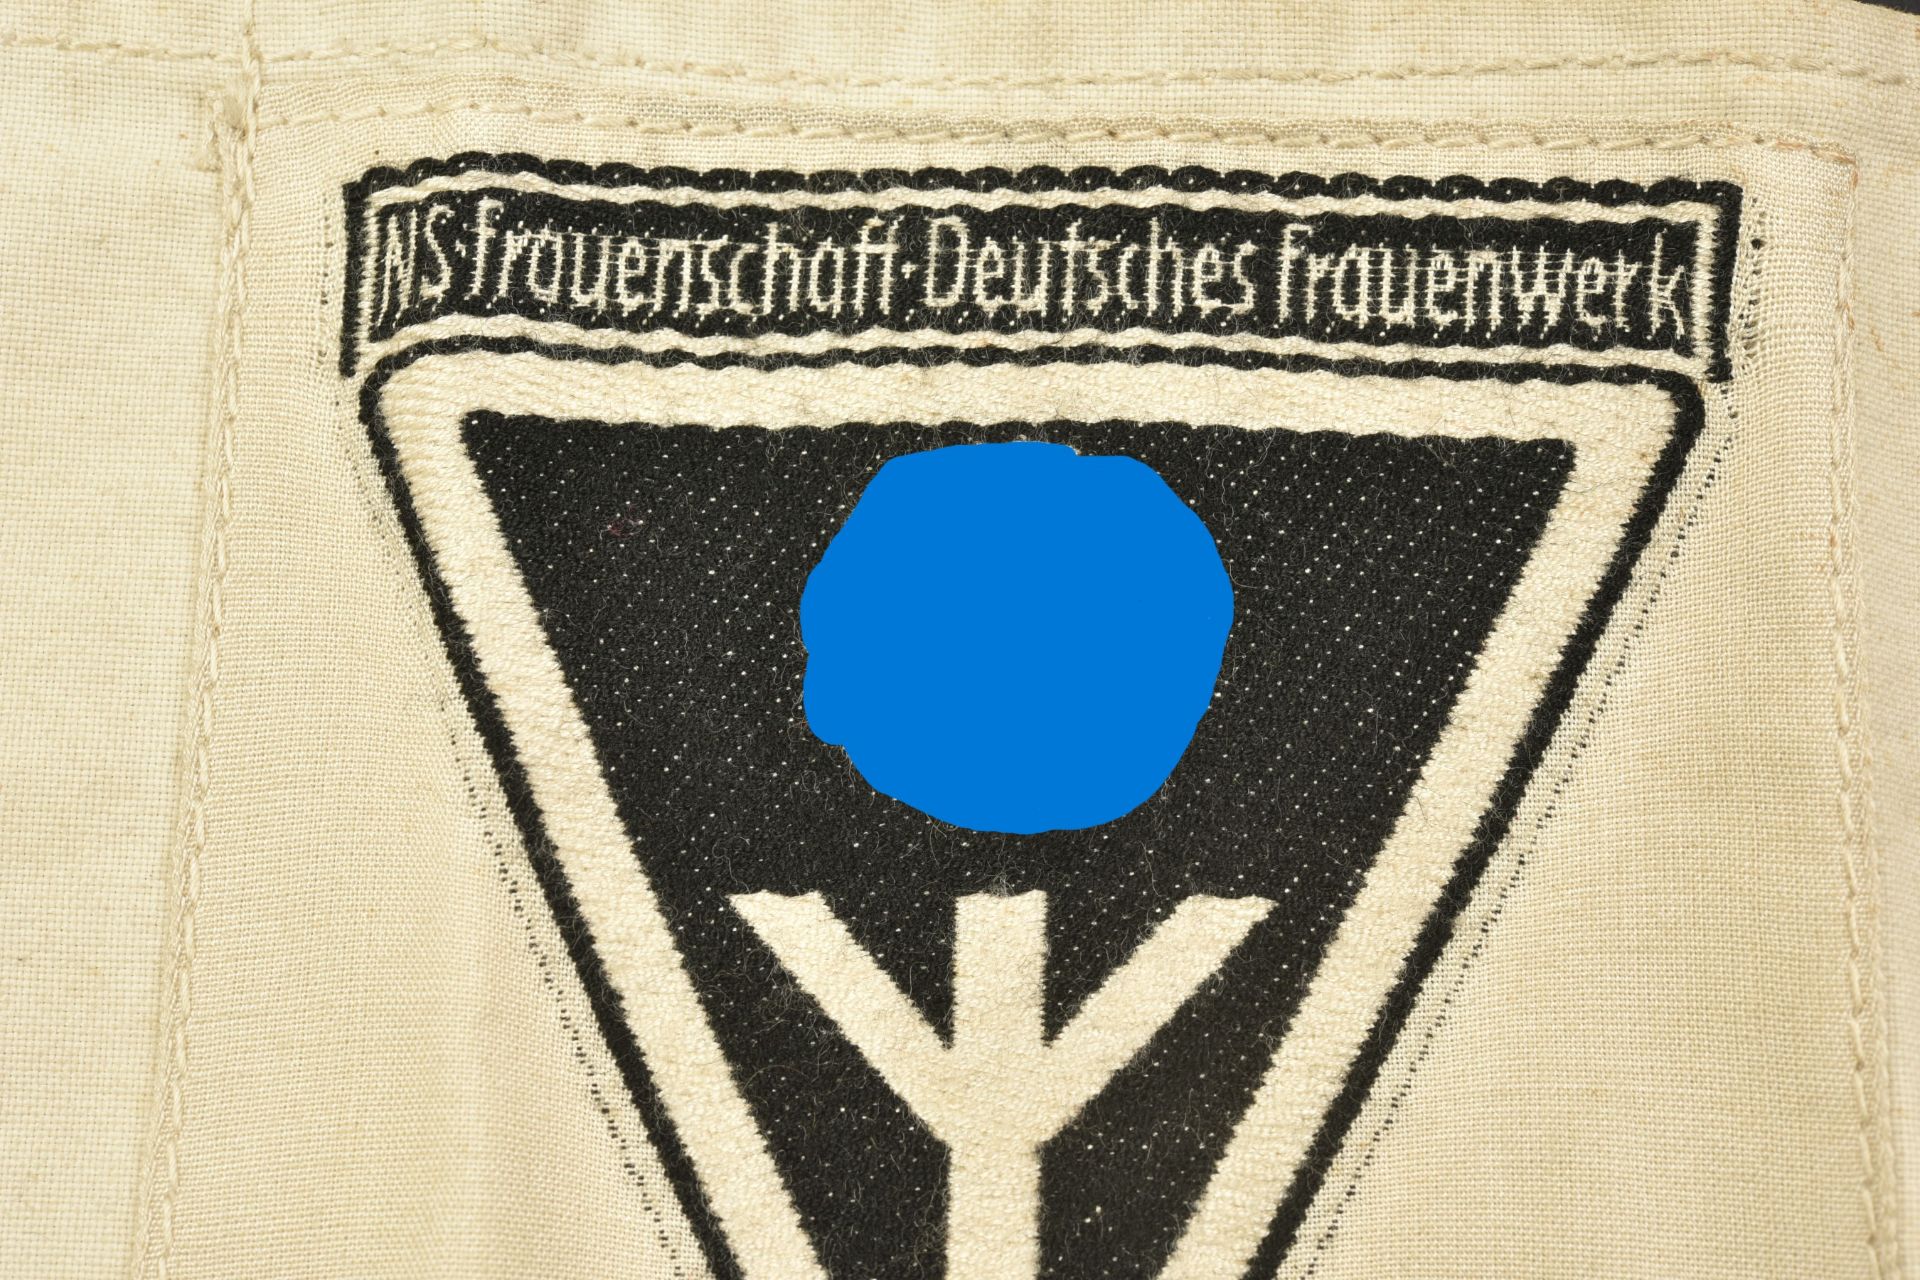 Brassard NS Frauenschaft. NSF armband. - Image 2 of 3